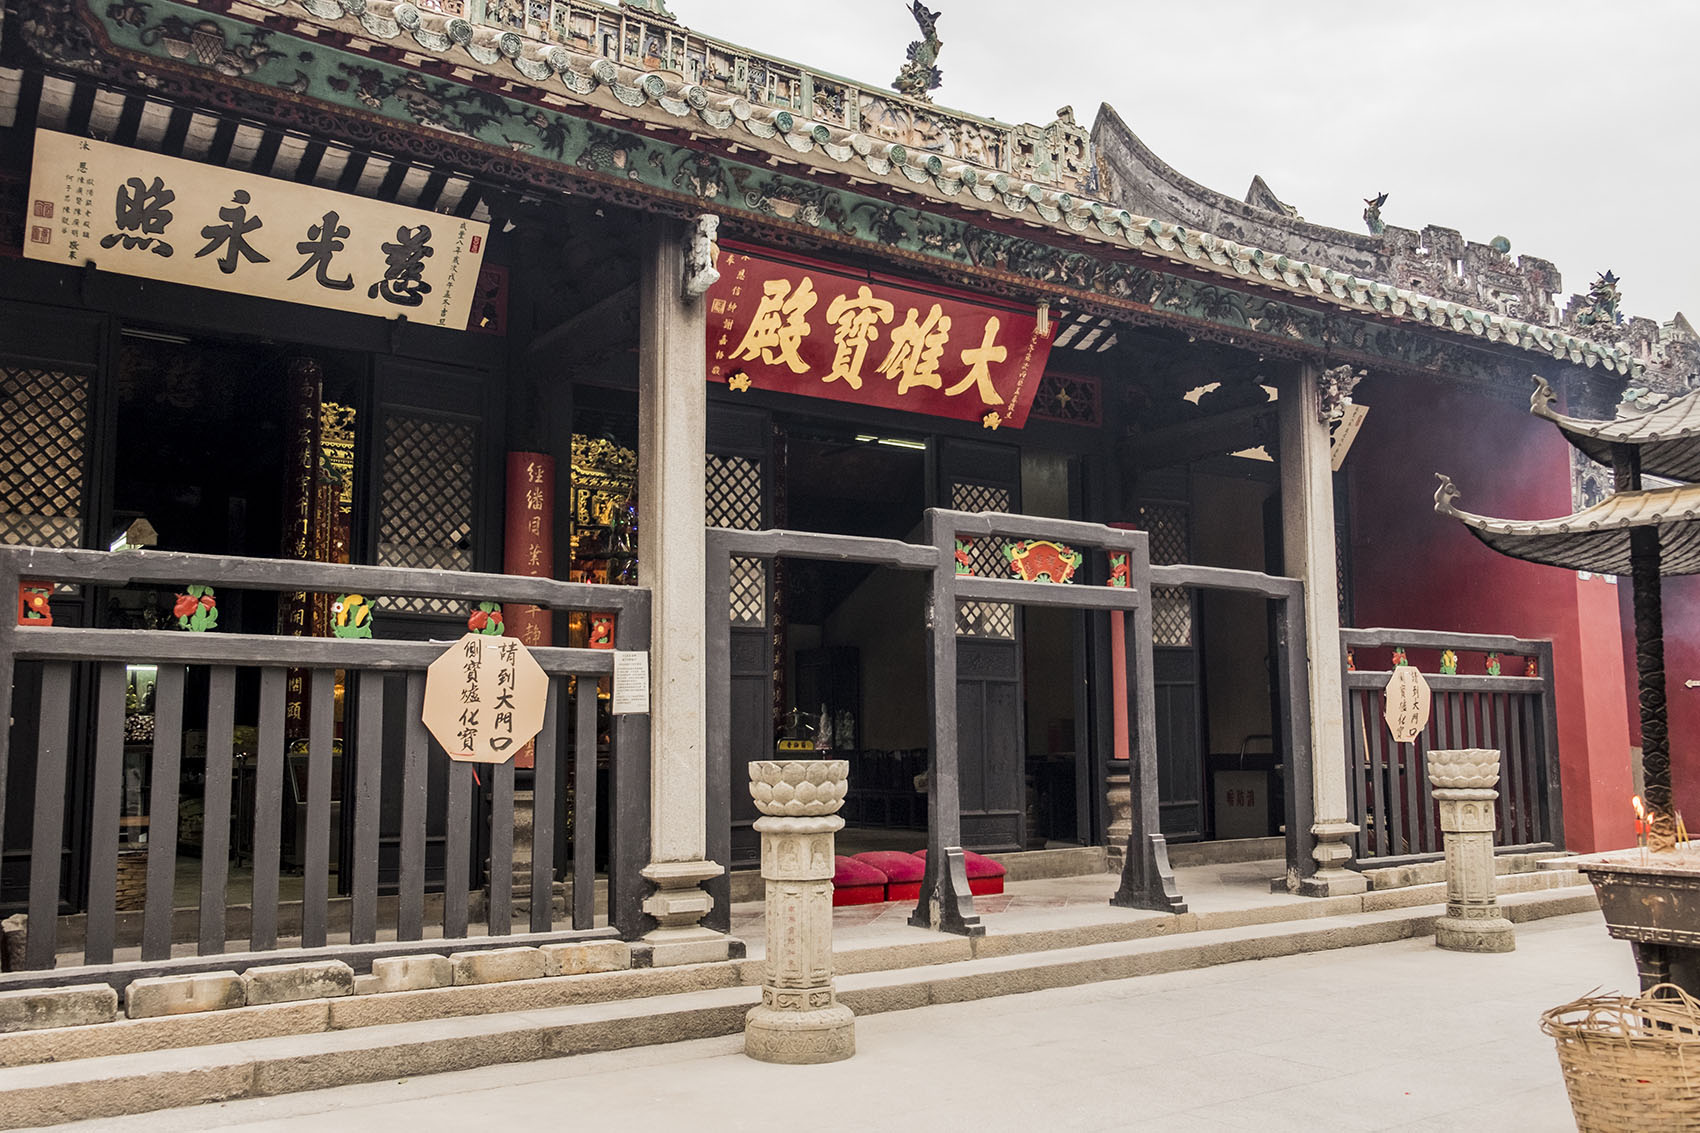 Kun Iam Tong Temple: Shrines